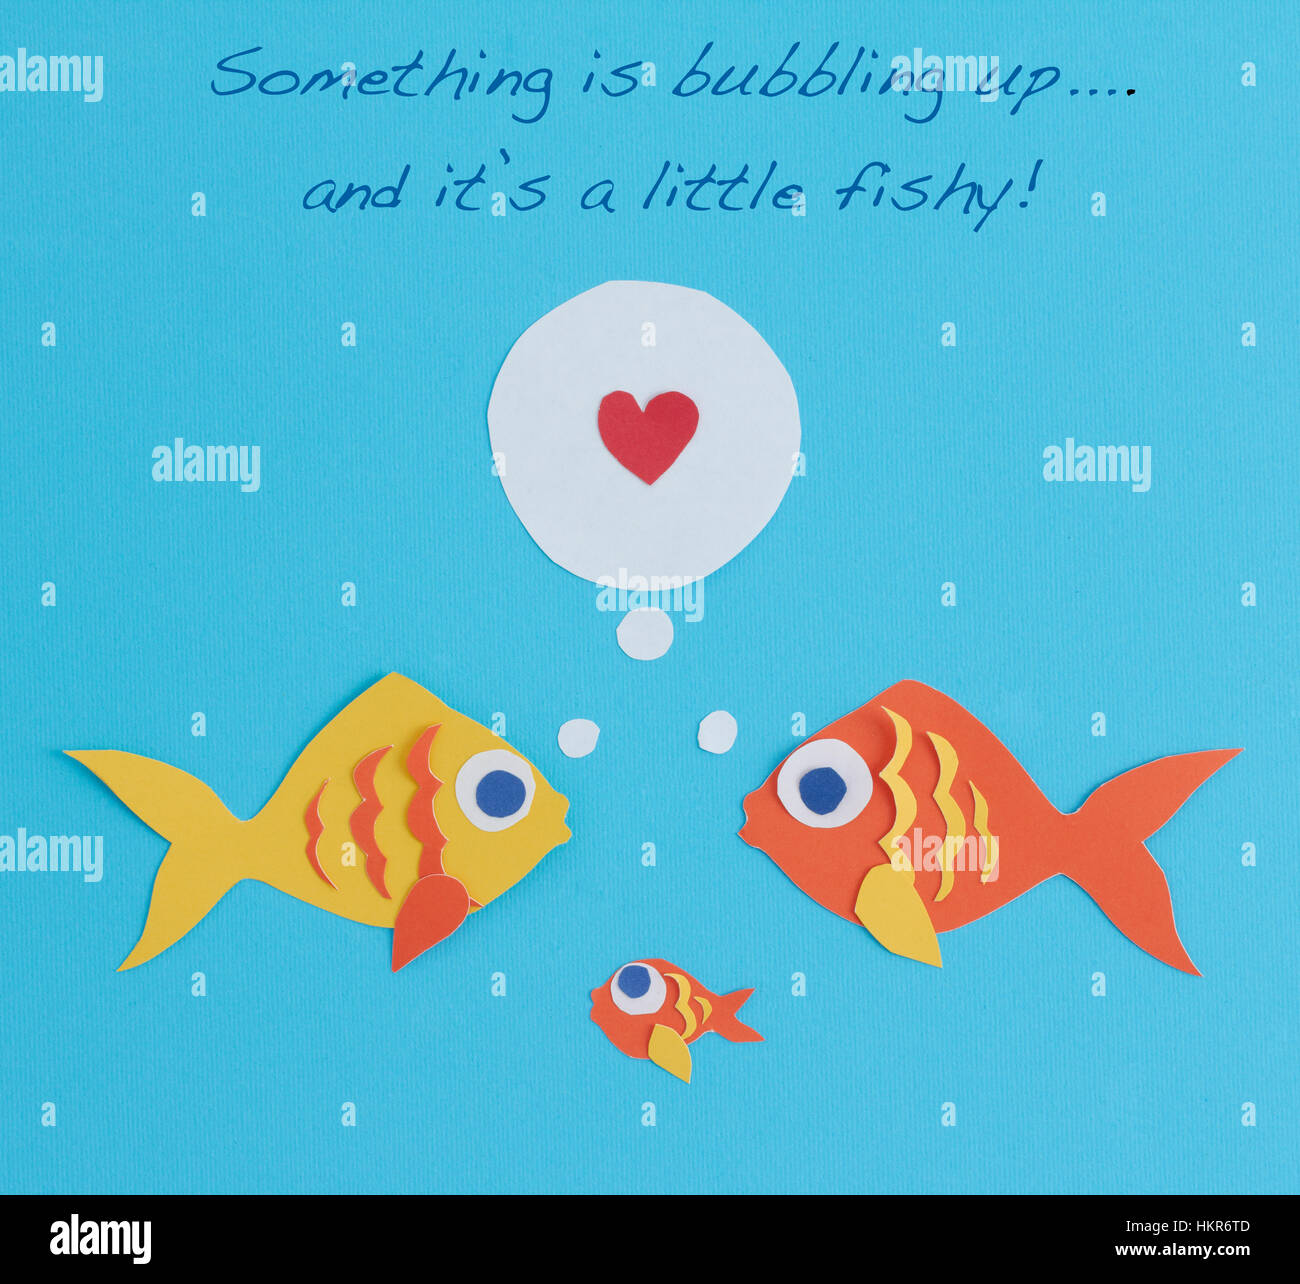 Ein paar Fische hat einen Neuzugang in der Familie: ein Babyfisch!  Die Worte sind "etwas sprudeln ist und es ist ein wenig faul" darüber geschrieben. Stockfoto